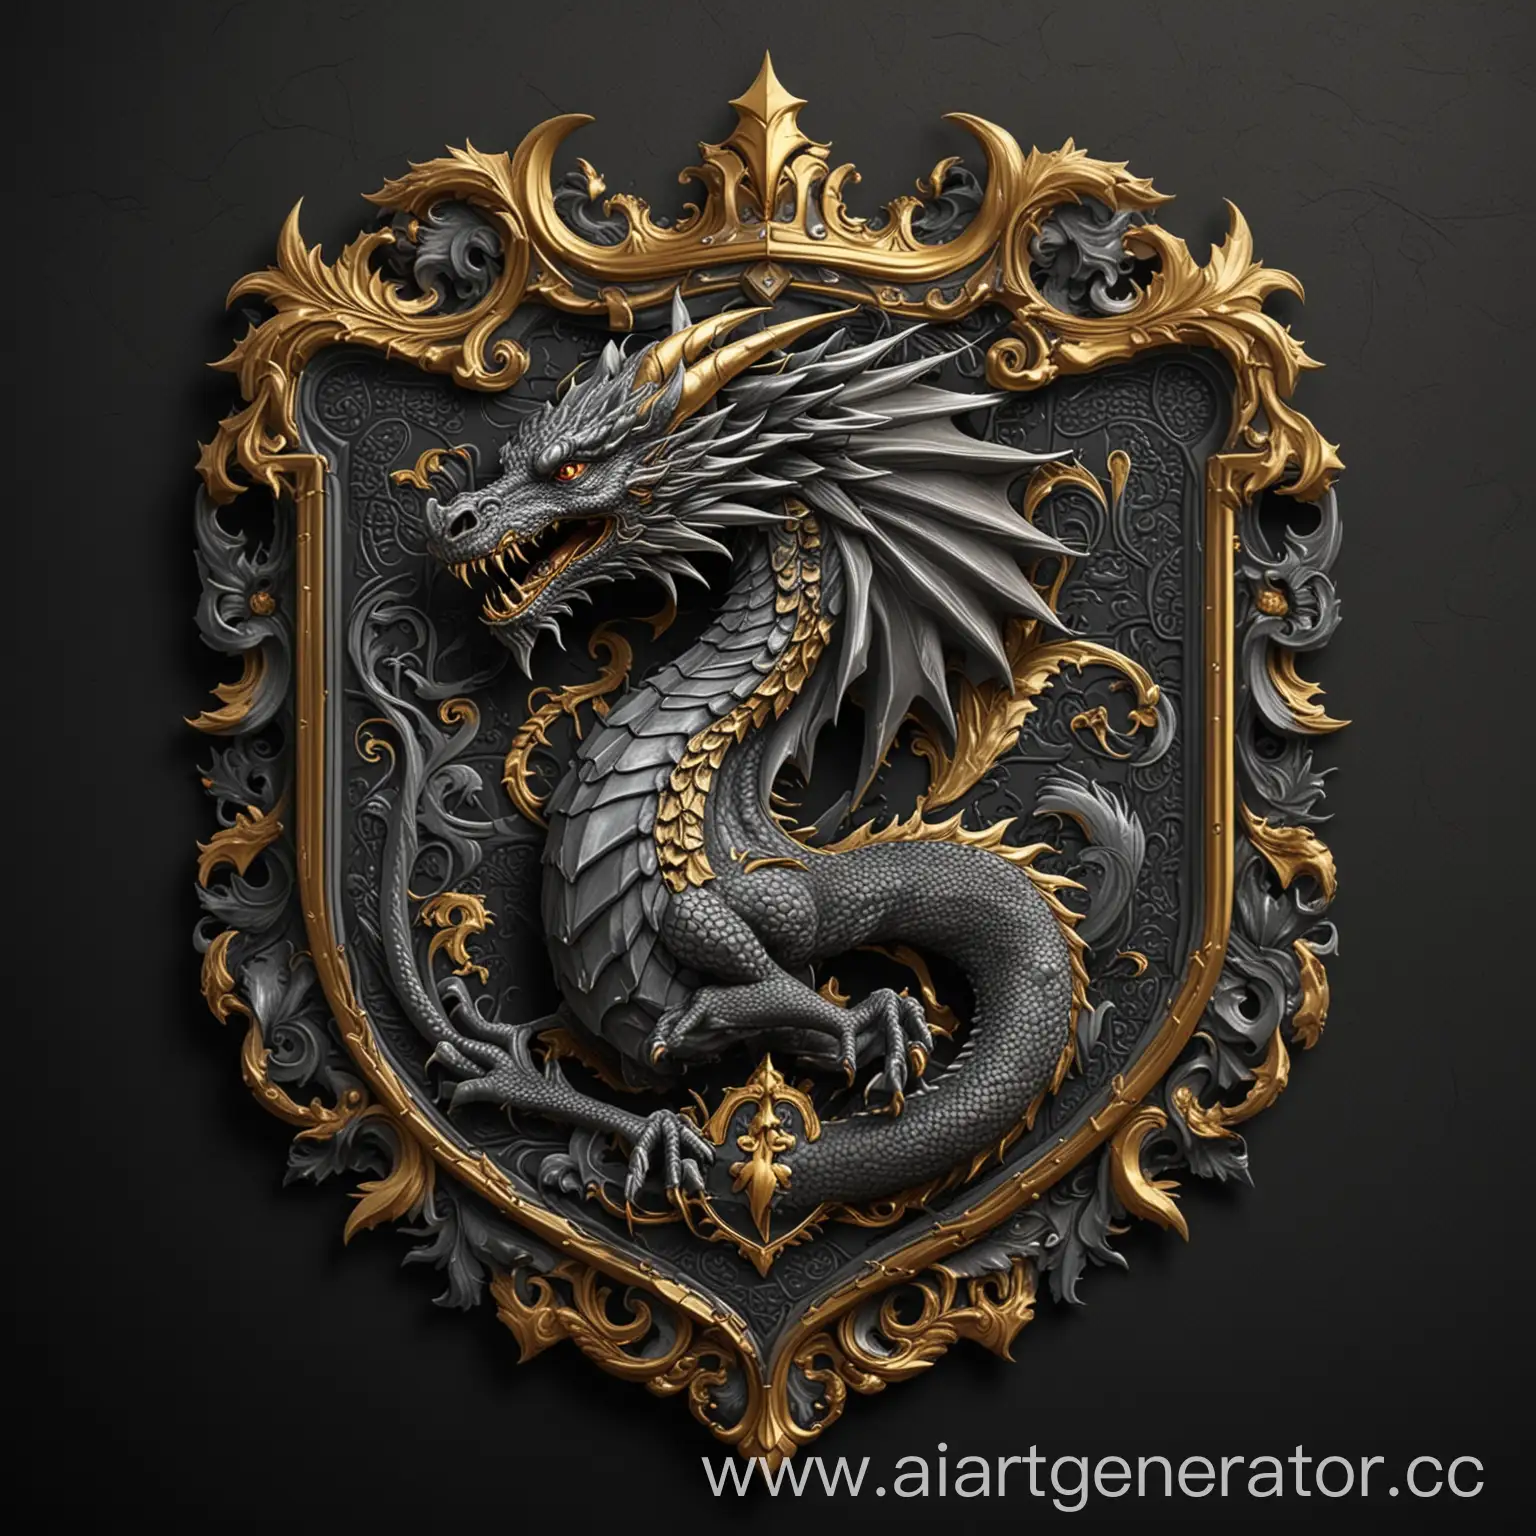 Придумай герб на черном фоне с серым драконом с золотой обводкой по краям